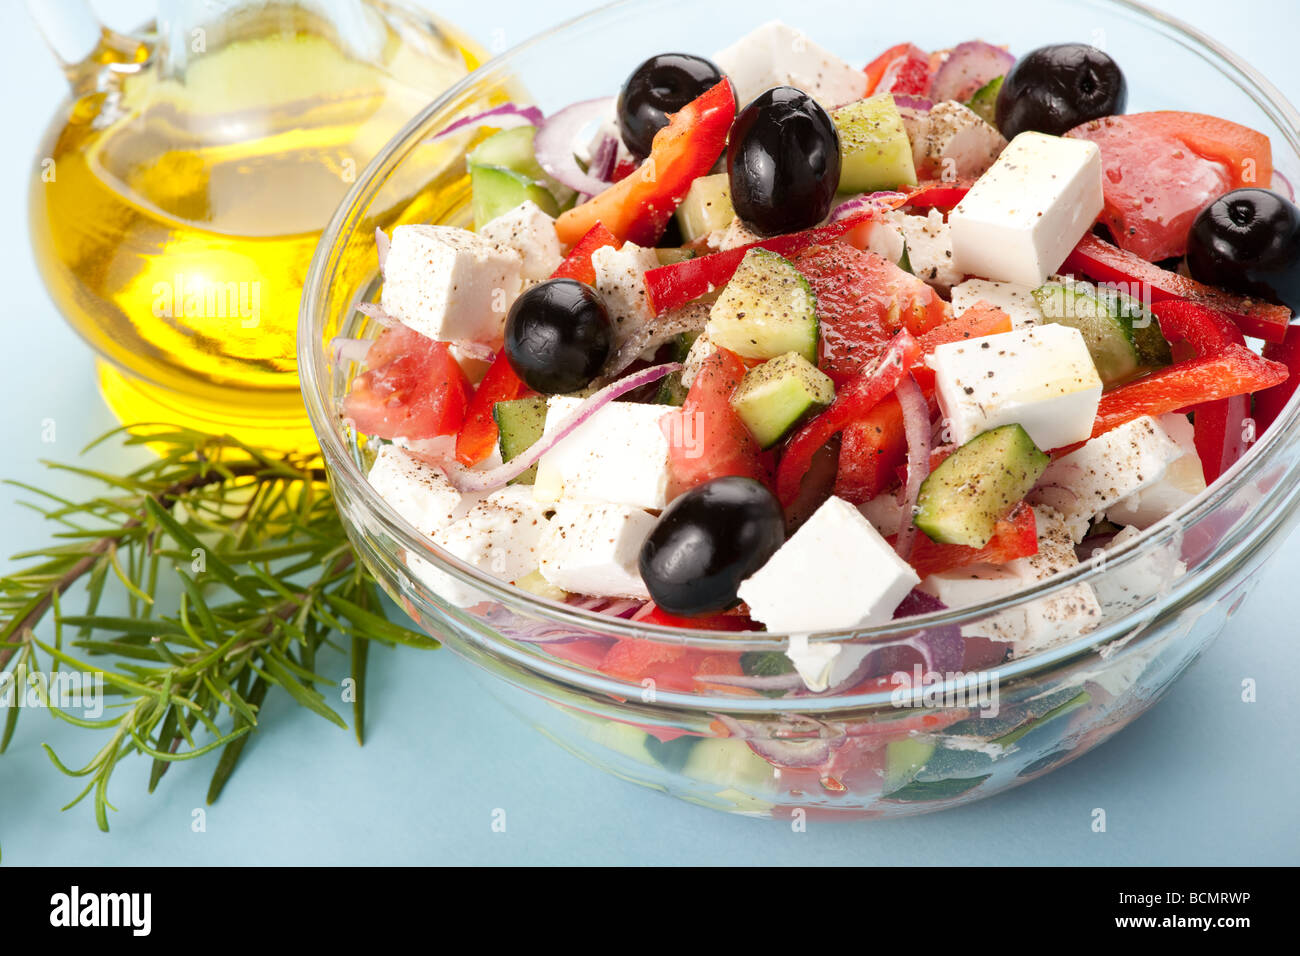 Salade grecque servi avec de l'huile d'olive Banque D'Images